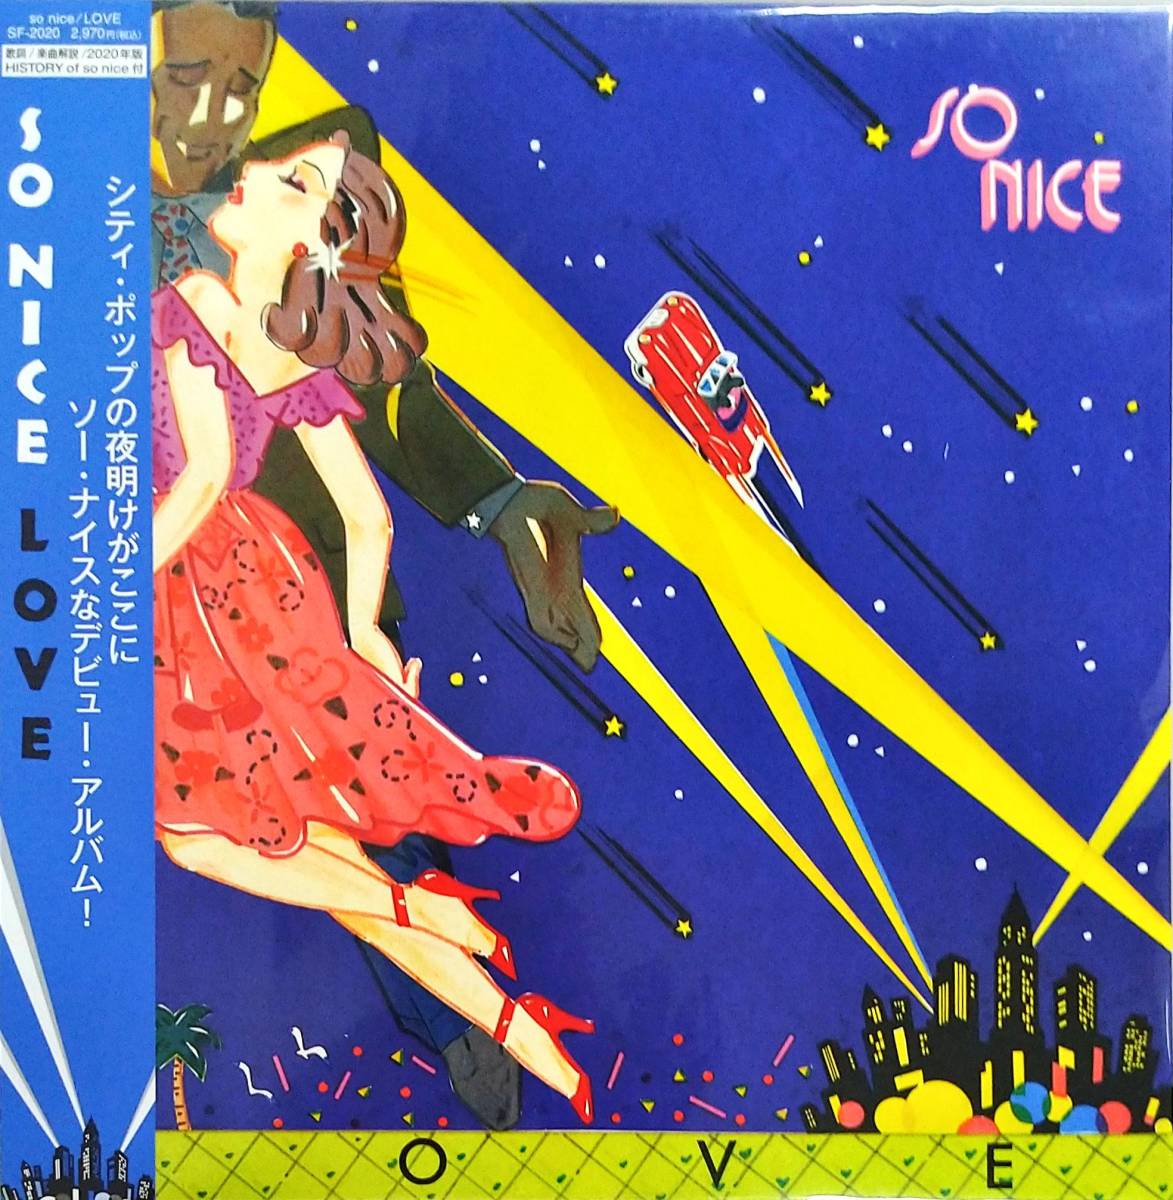 ♪新品・限定盤♪SO NICE - LOVE (2020 EDITION)　 2013年にリイシューされた'79年のヤング・シティ・ポップ傑作が待望の再プレス!_提供画像です。